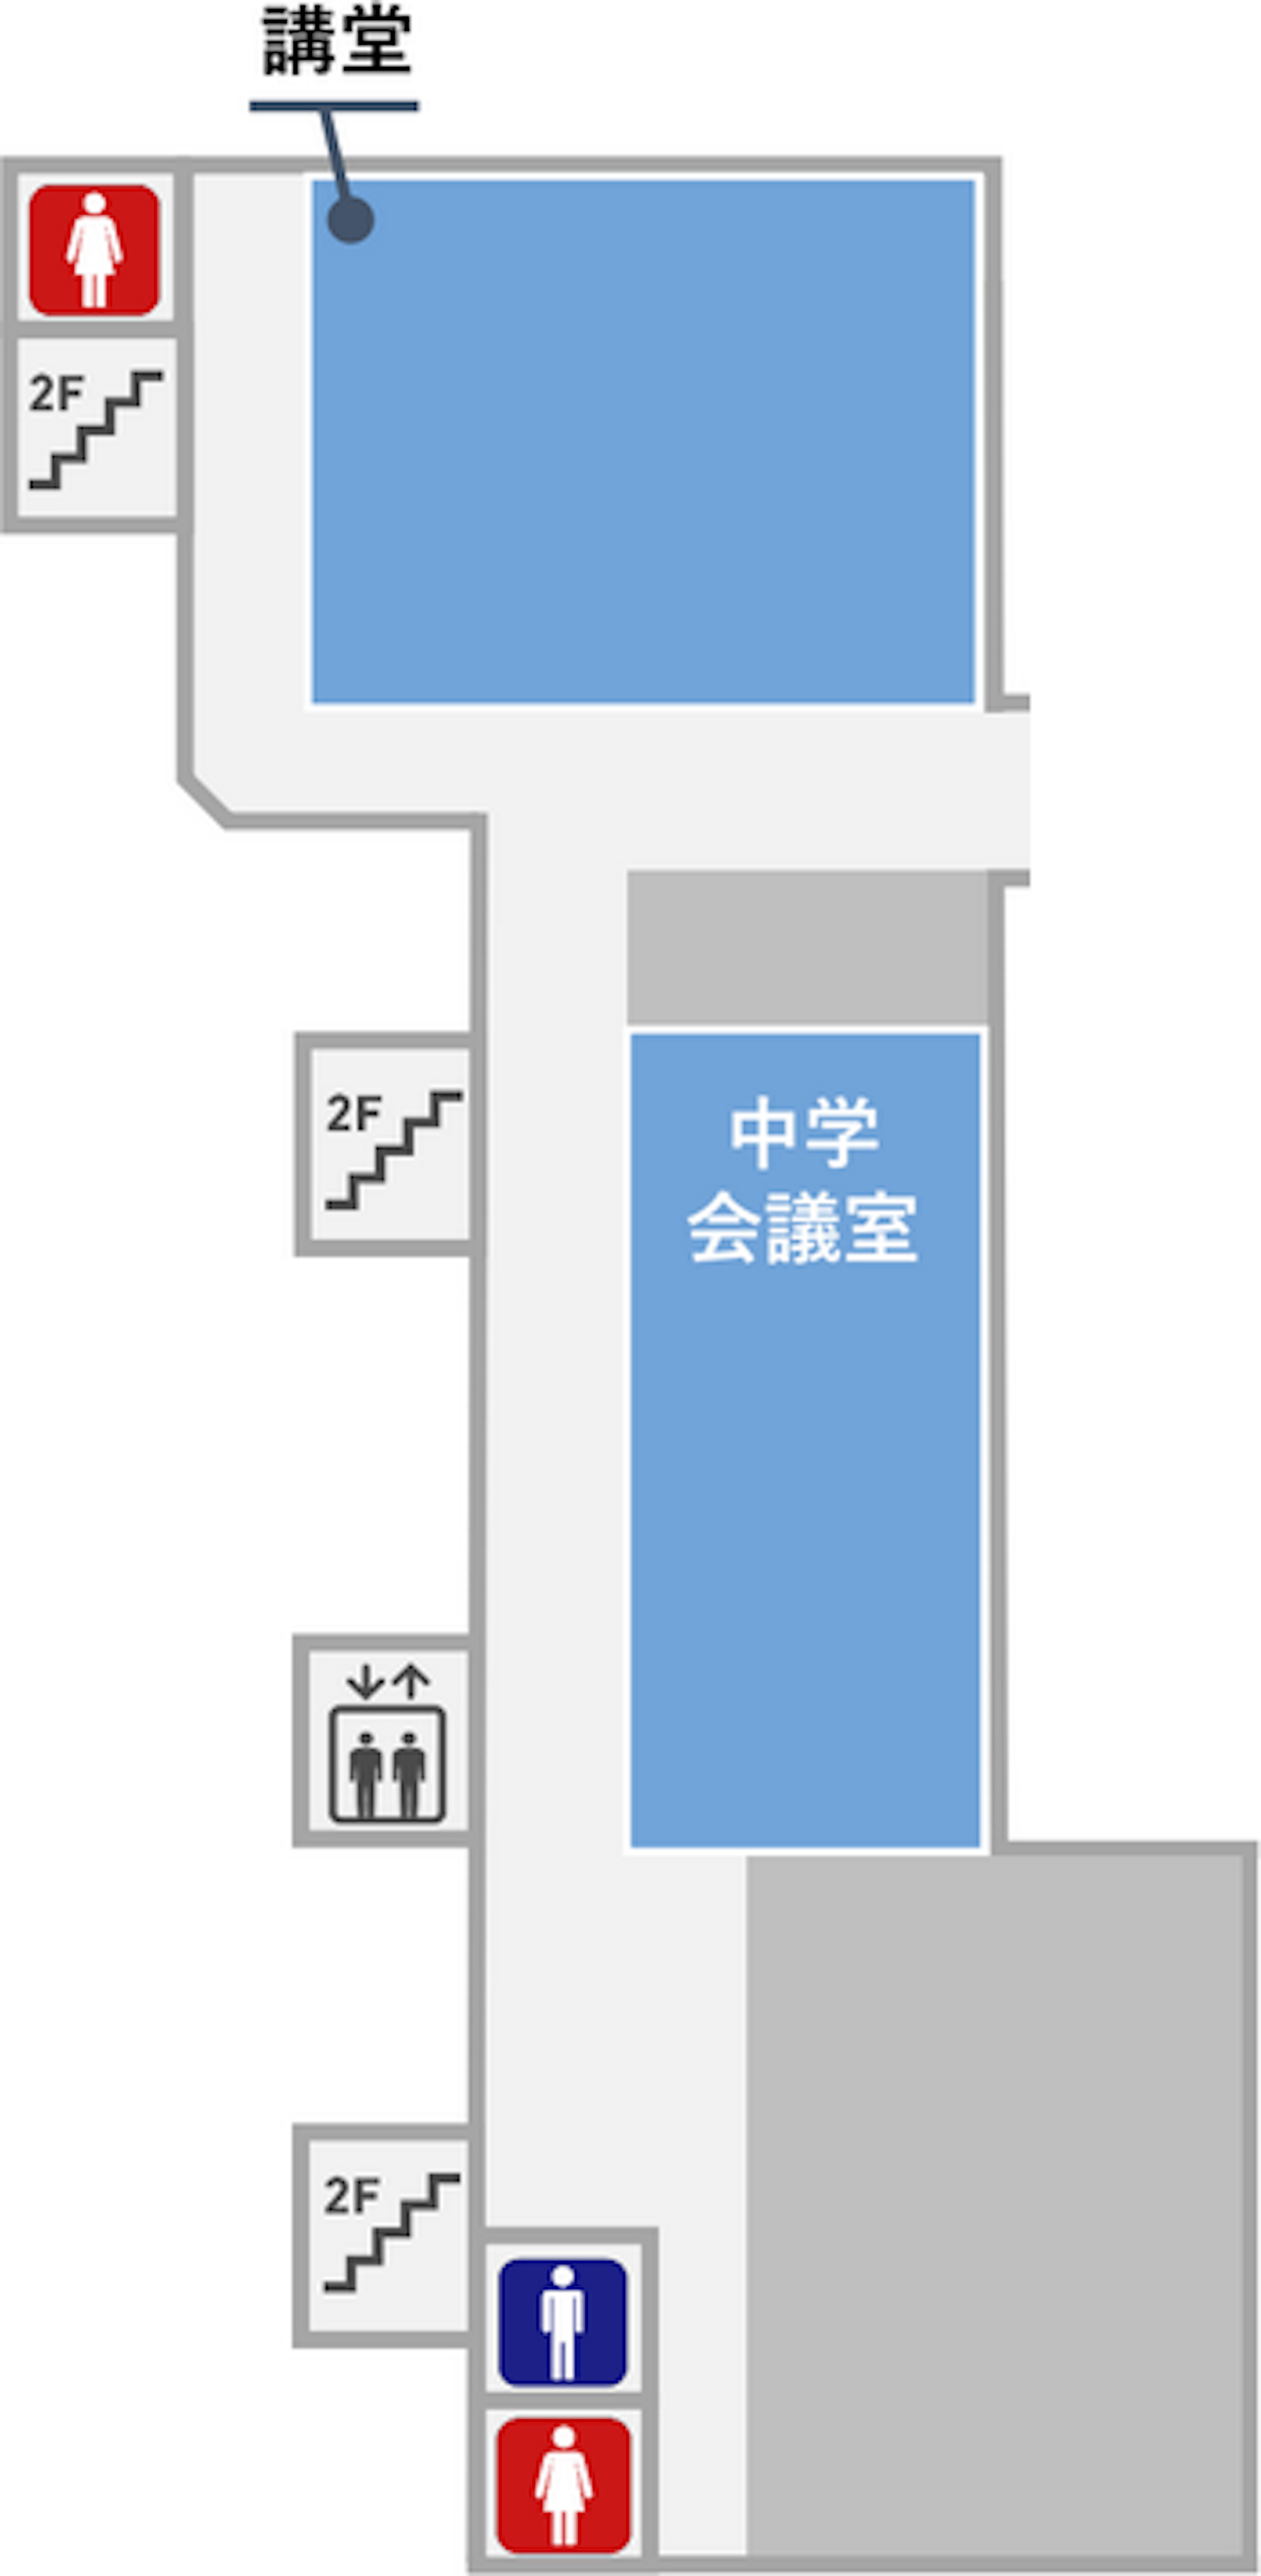 講堂の隣に女子トイレがあります。講堂の反対側の奥には男子トイレと女子トイレがあります。講堂の前の廊下は本館２階と渡り廊下で繋がっています。